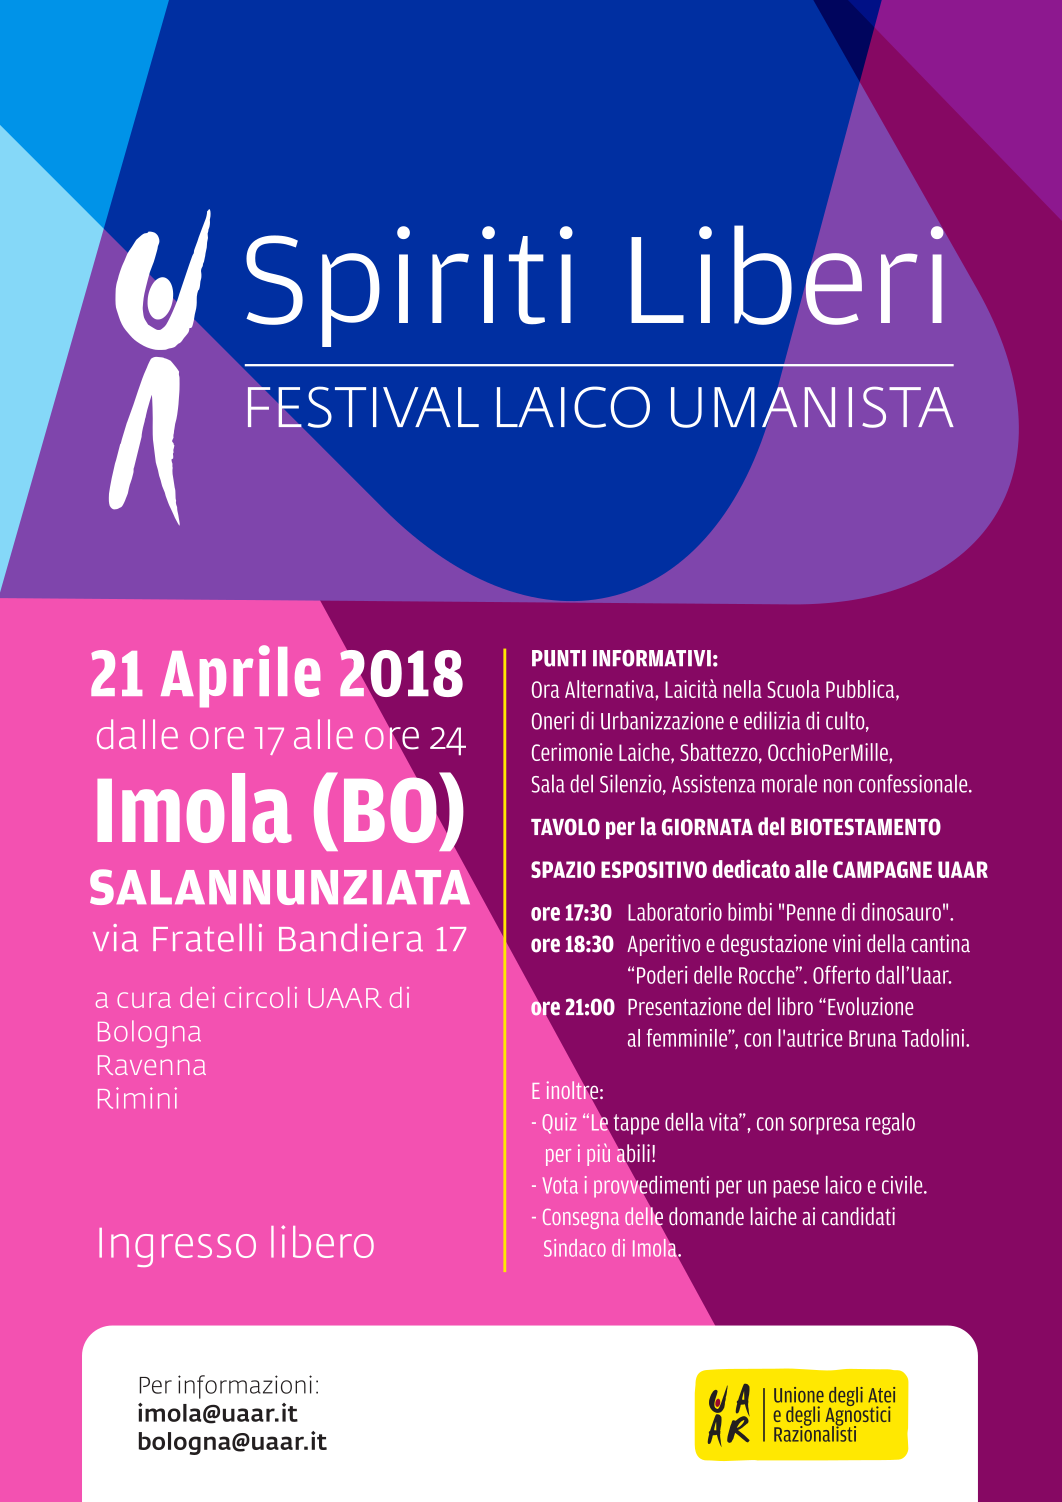 Spiriti Liberi, FLU Imola 2018